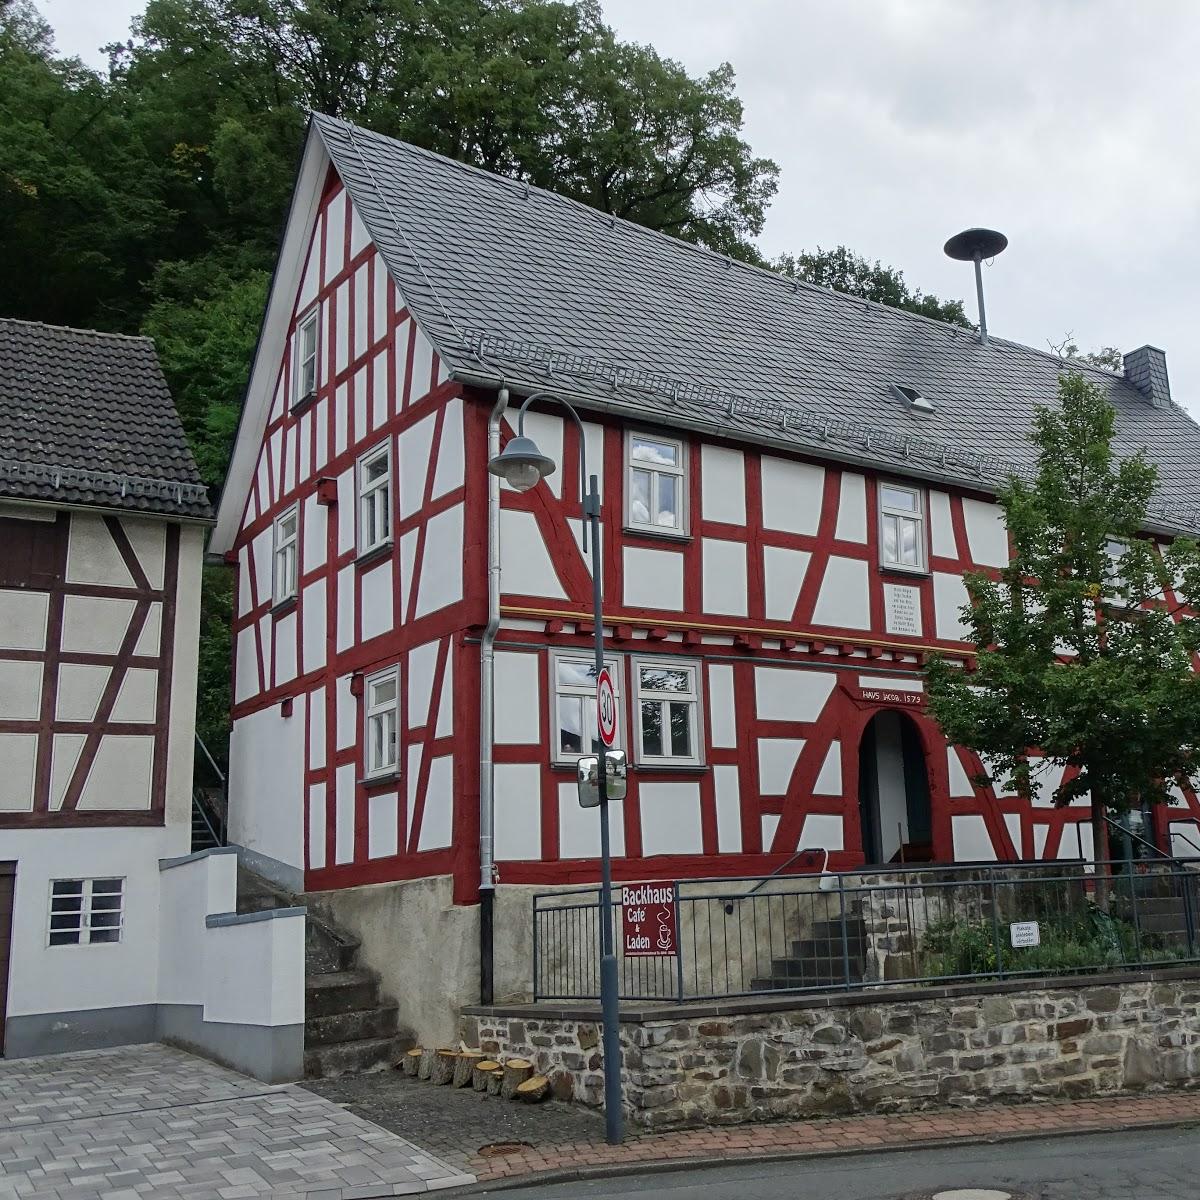 Restaurant "Backhaus Großaltenstädten" in  Hohenahr